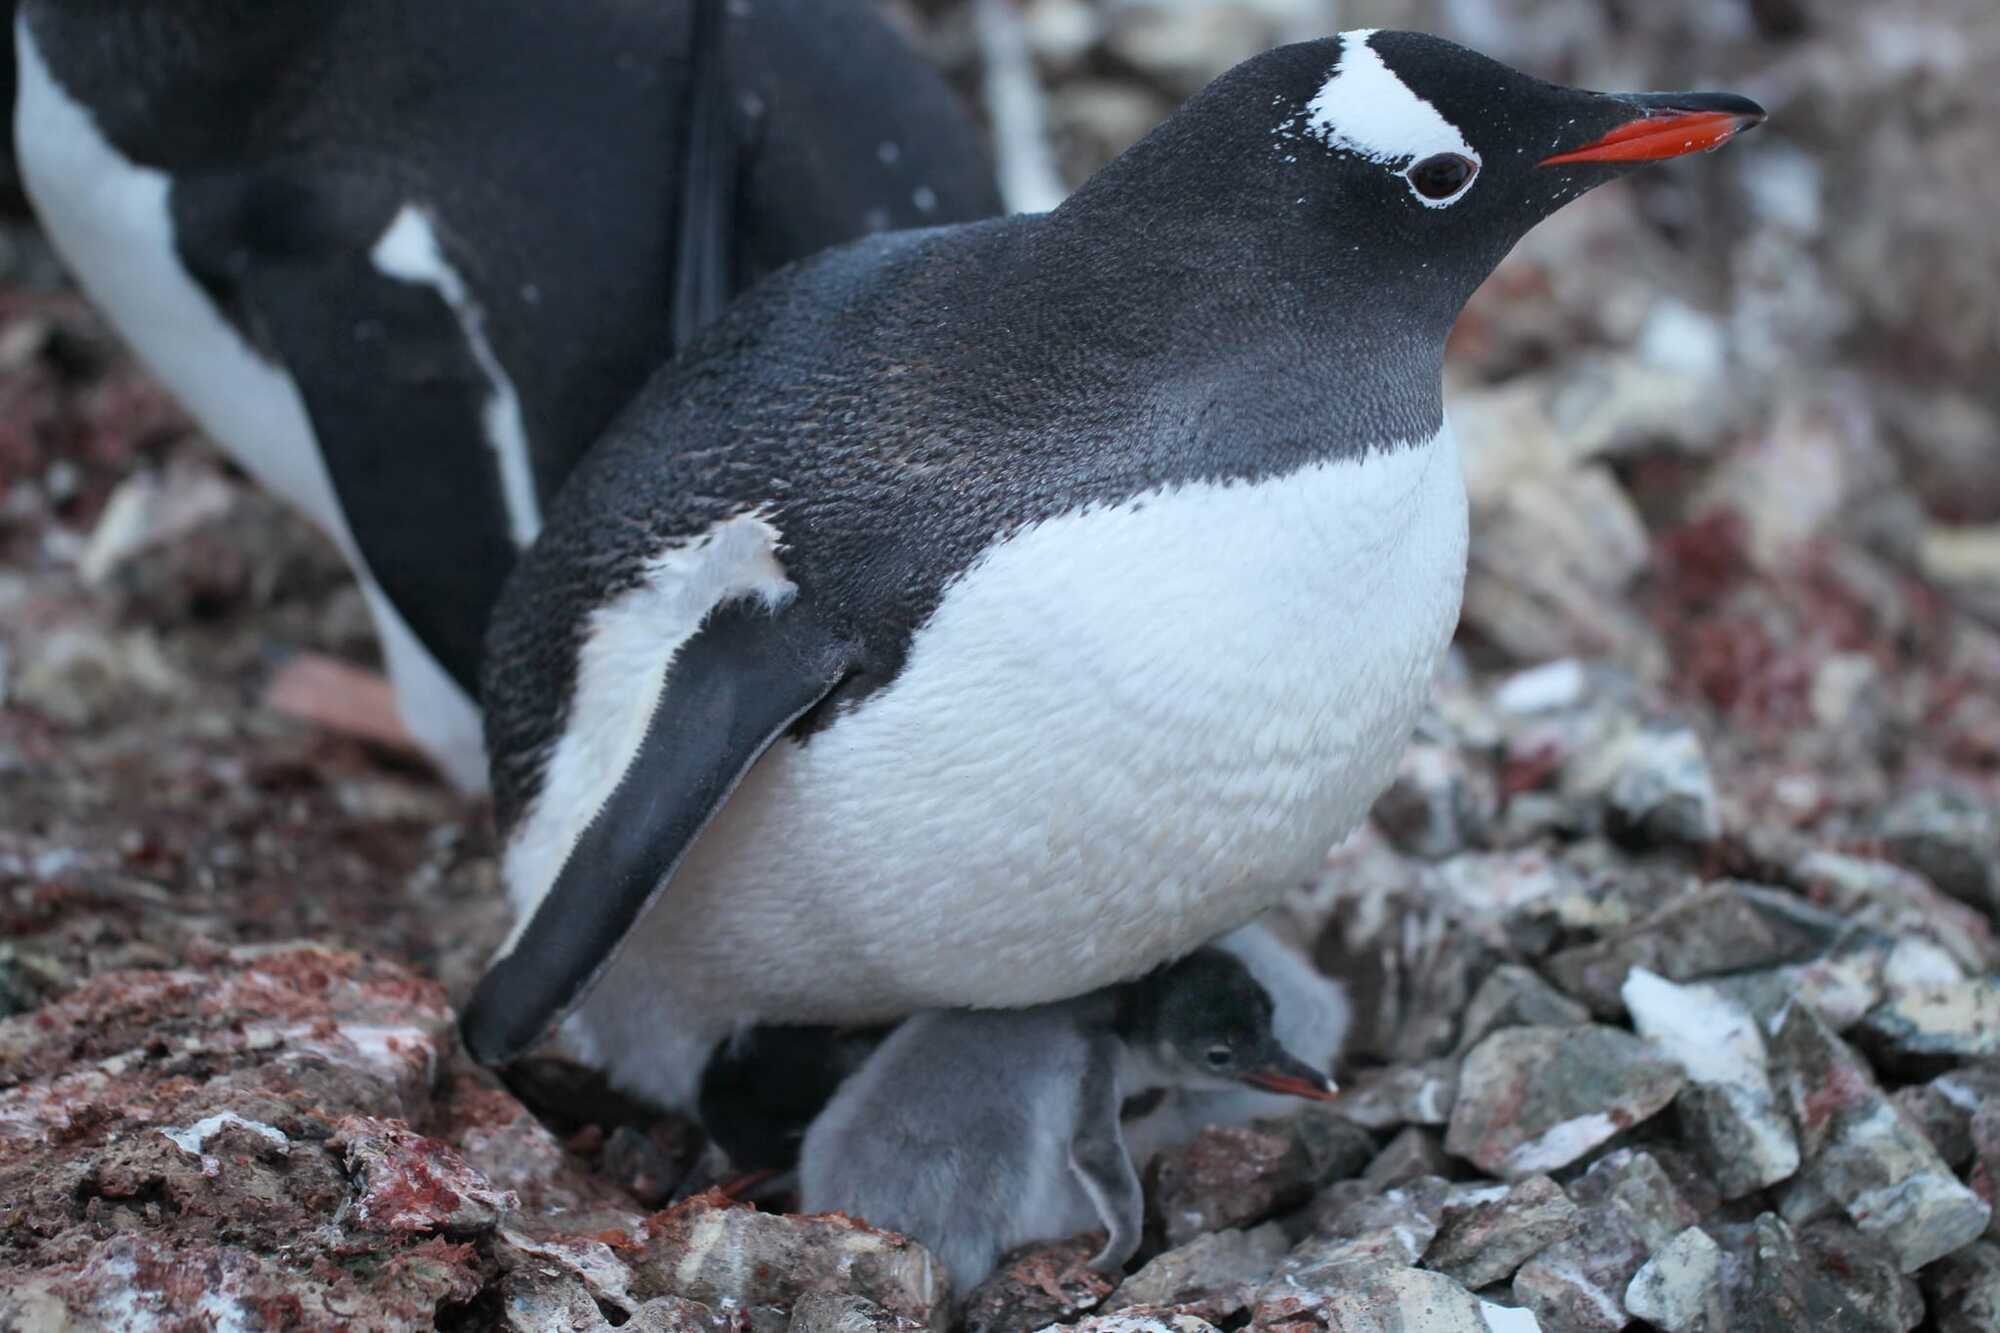 Біля станції "Академік Вернадський" почався бебі-бум: на світ з’явилися пташенята субантарктичних пінгвінів. Фото